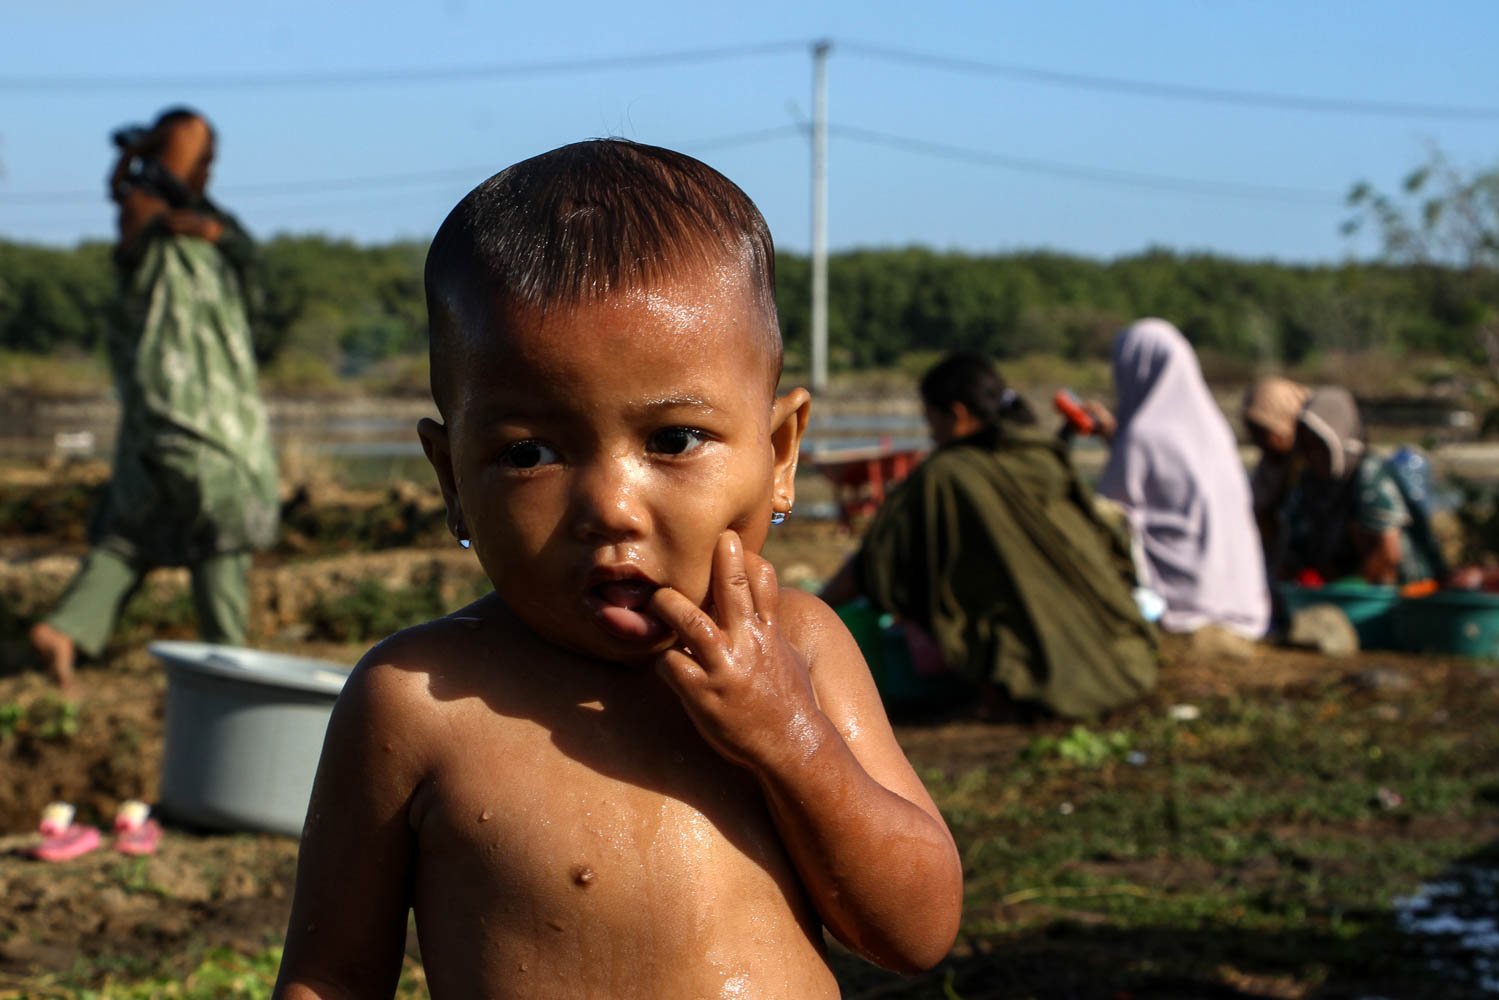 Seorang bocah selesai mandi di dekat embung di Desa Pajukukang, Kecamatan Bontoa, Kabupaten Maros, Sulawesi Selatan.